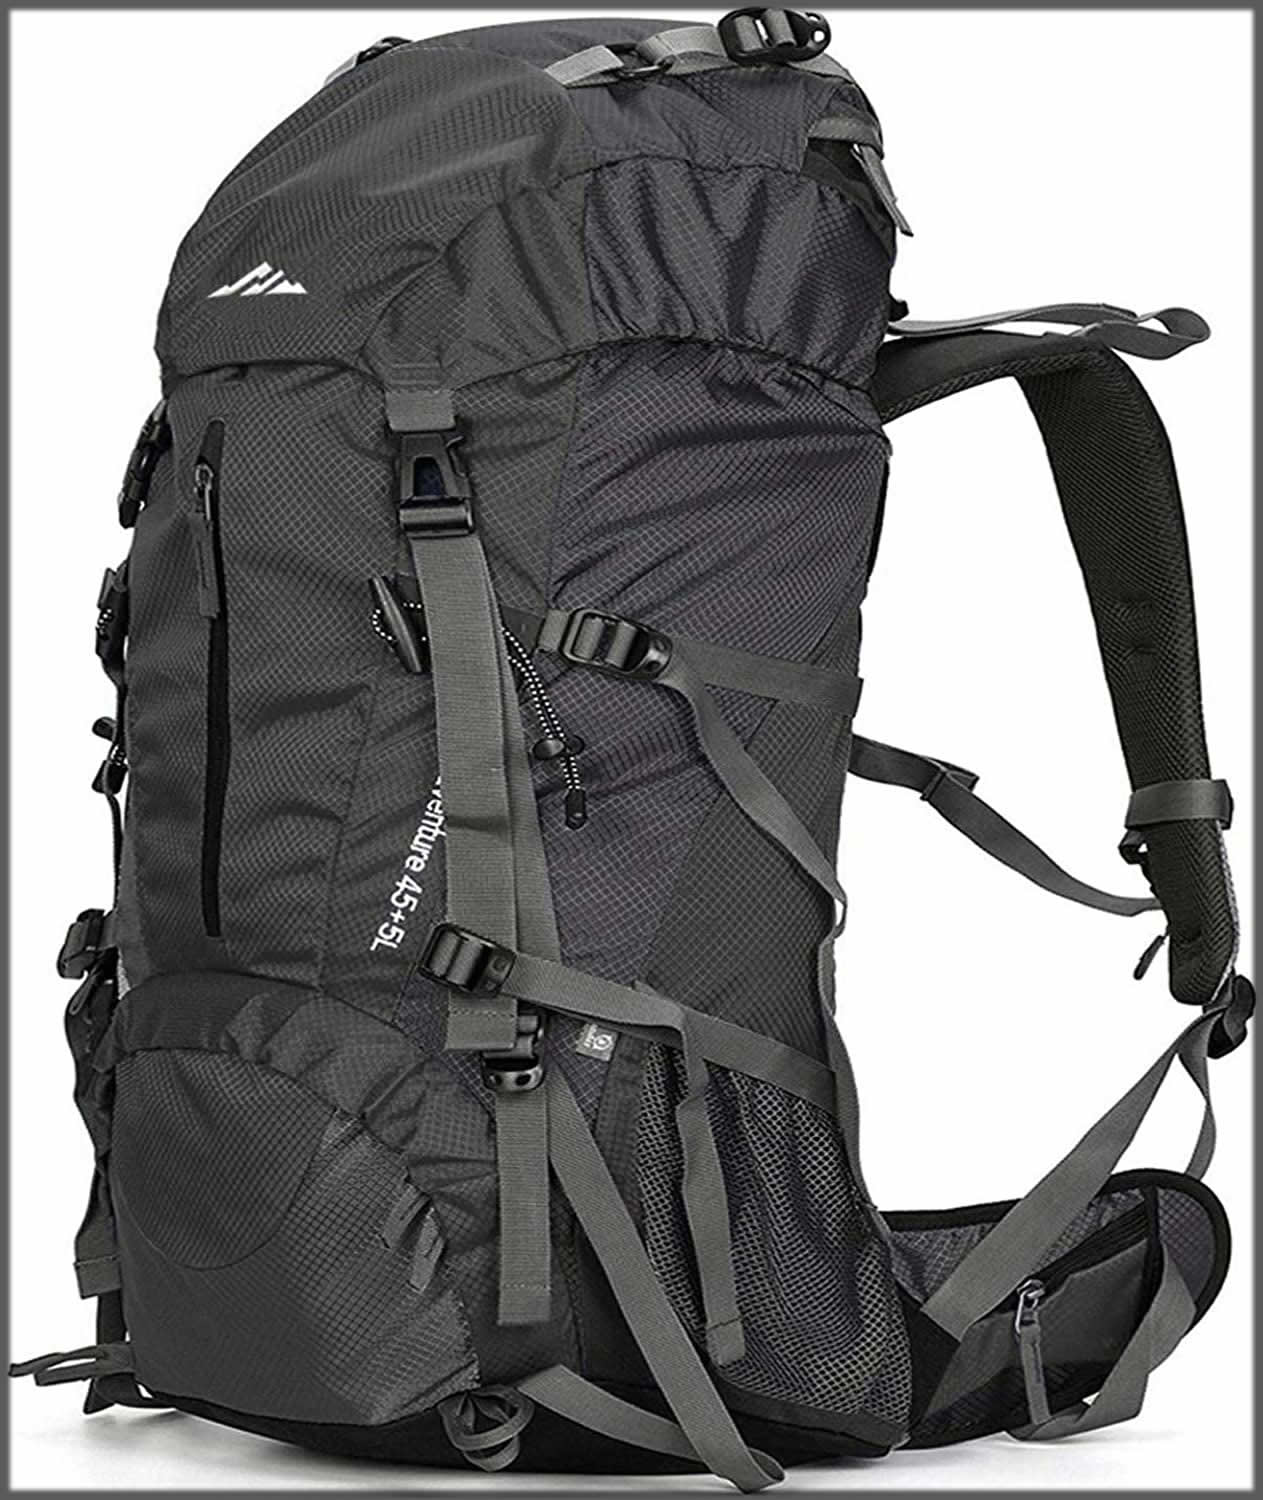 Hiking backpack for men